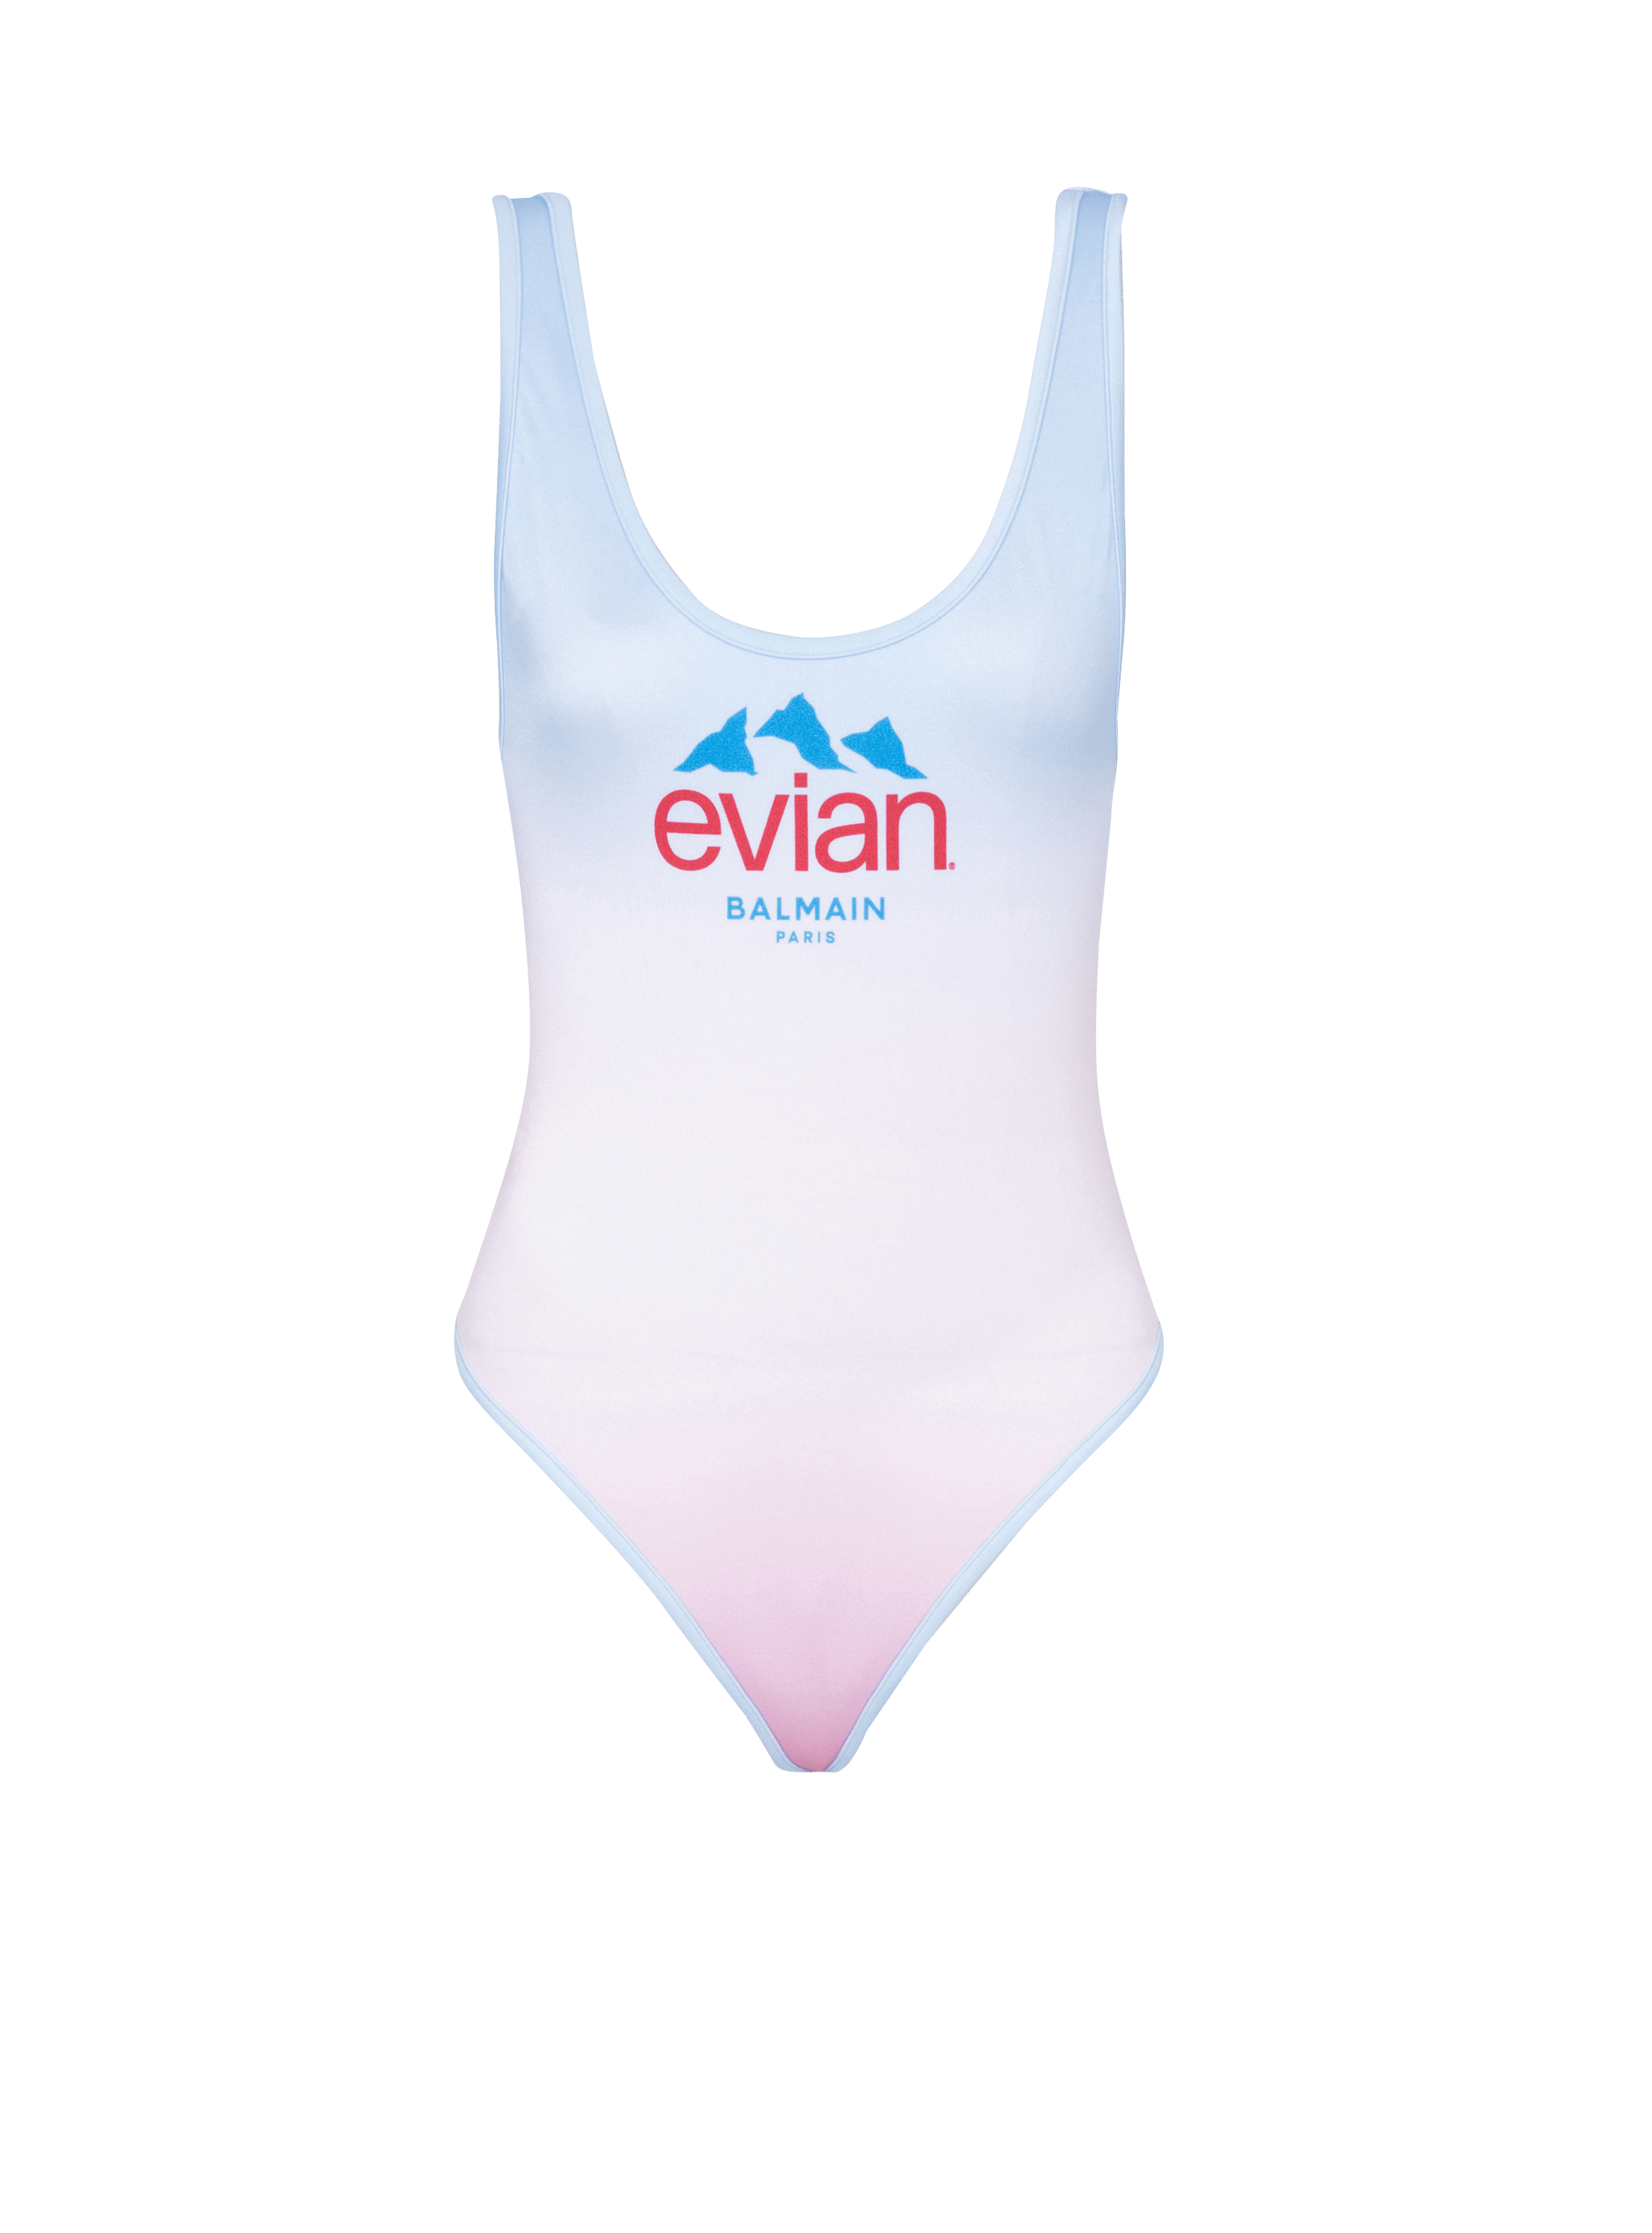 Balmain x Evian - swimsuit